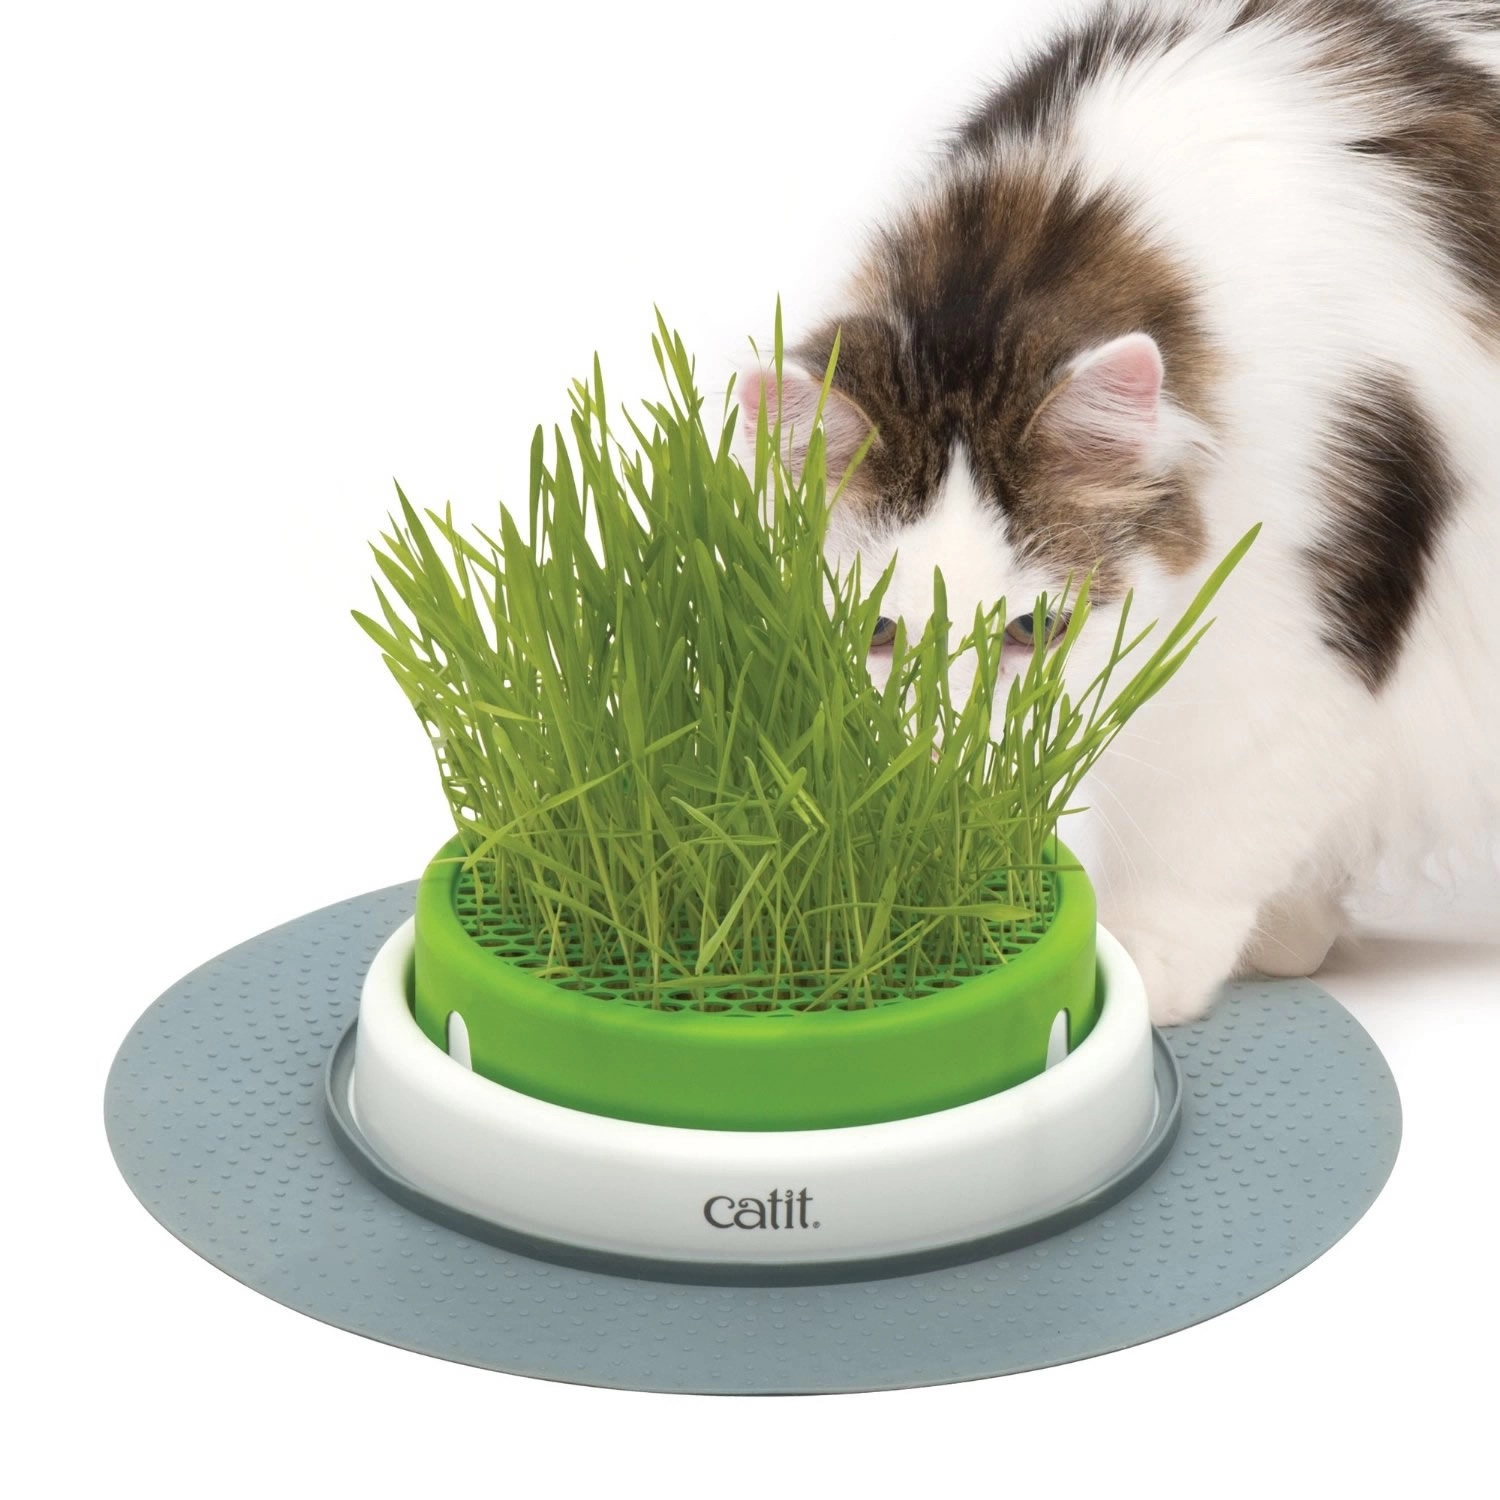 Catit - Catit Senses 2.0 Grass Planter